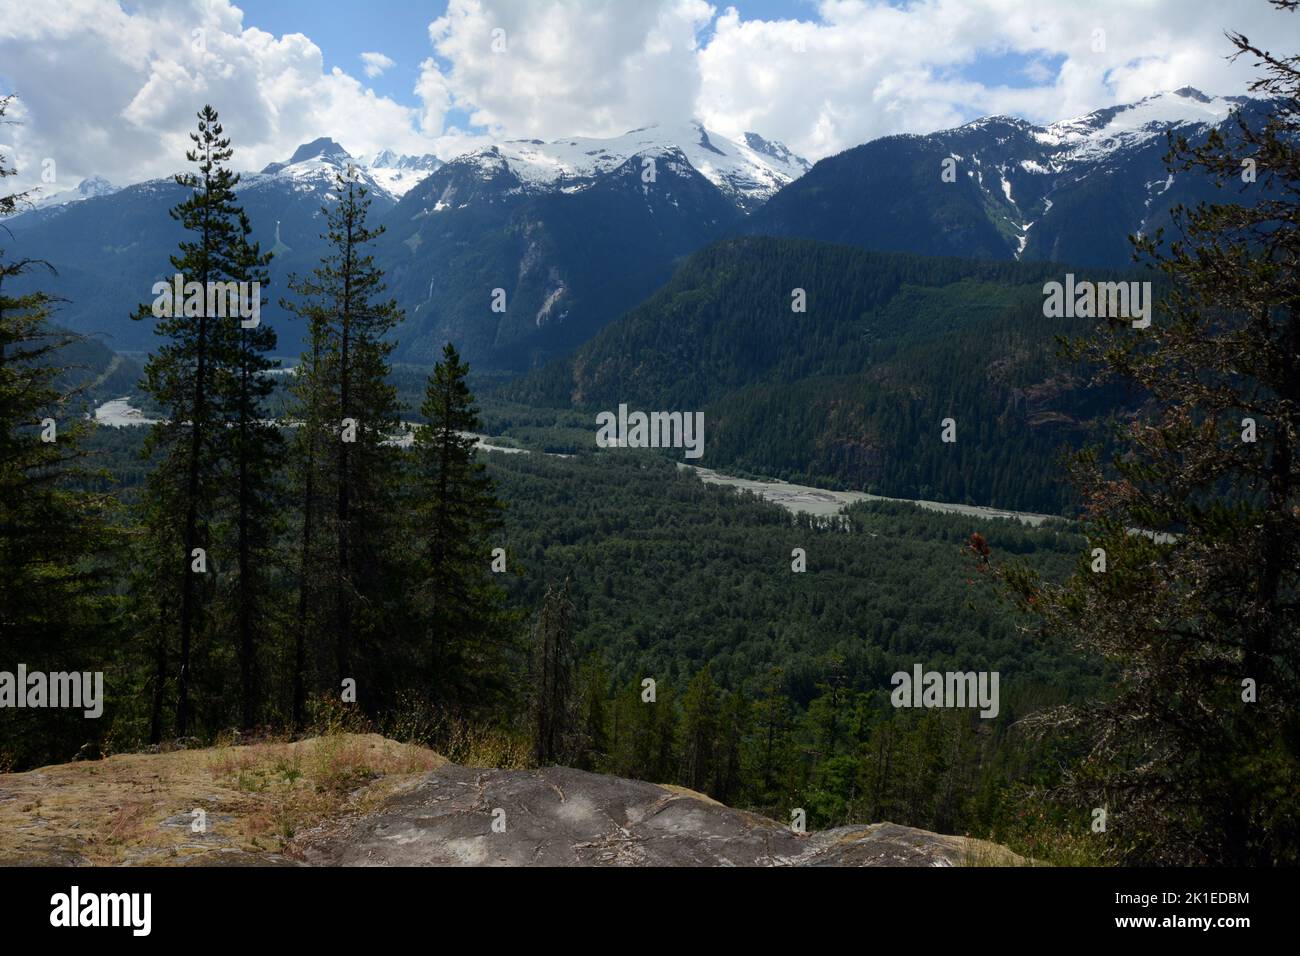 Der Upper Squamish River und das Valley, die durch die Tantalus Range der Coast Mountains von British Columbia, Kanada, führen. Stockfoto